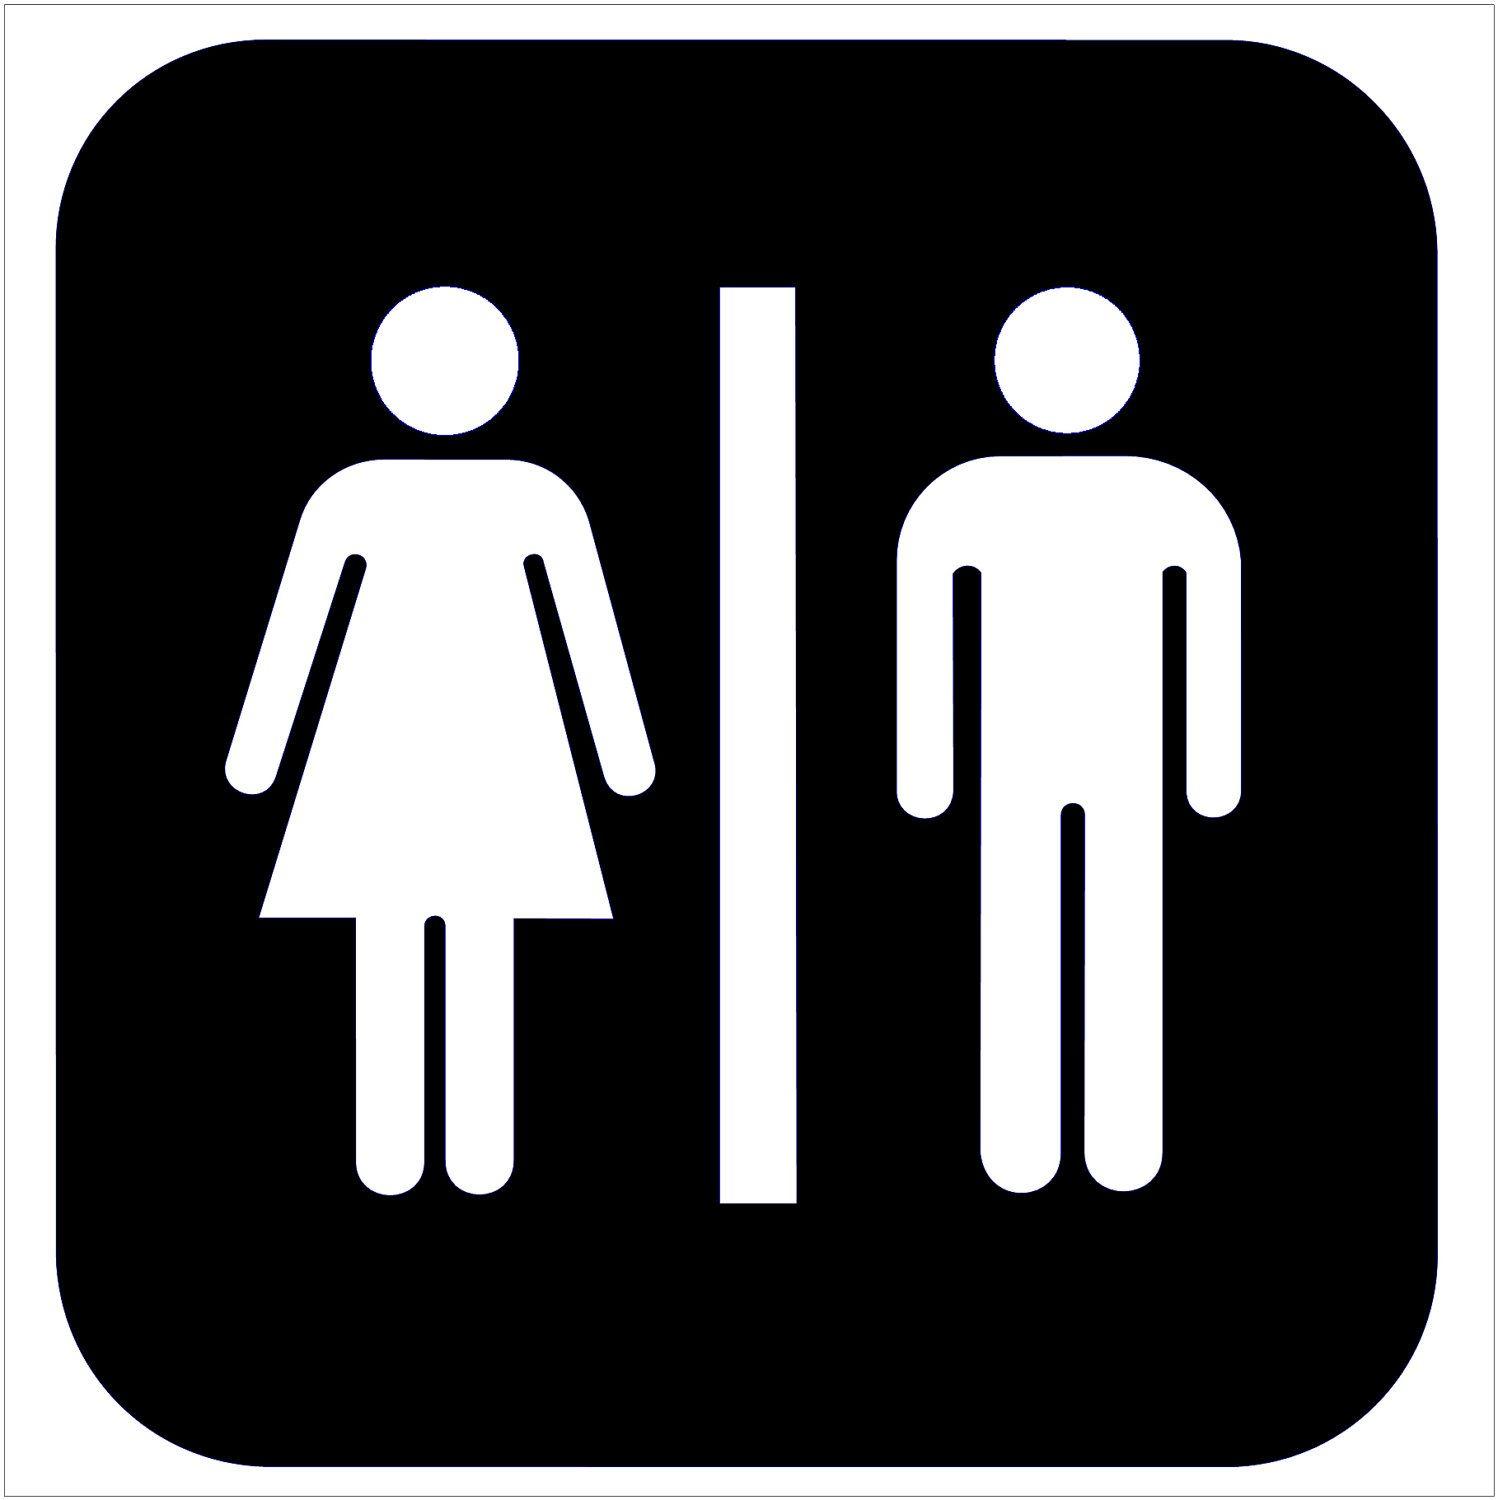 Bathroom Logo - Free Bathrooms Cliparts, Download Free Clip Art, Free Clip Art on ...